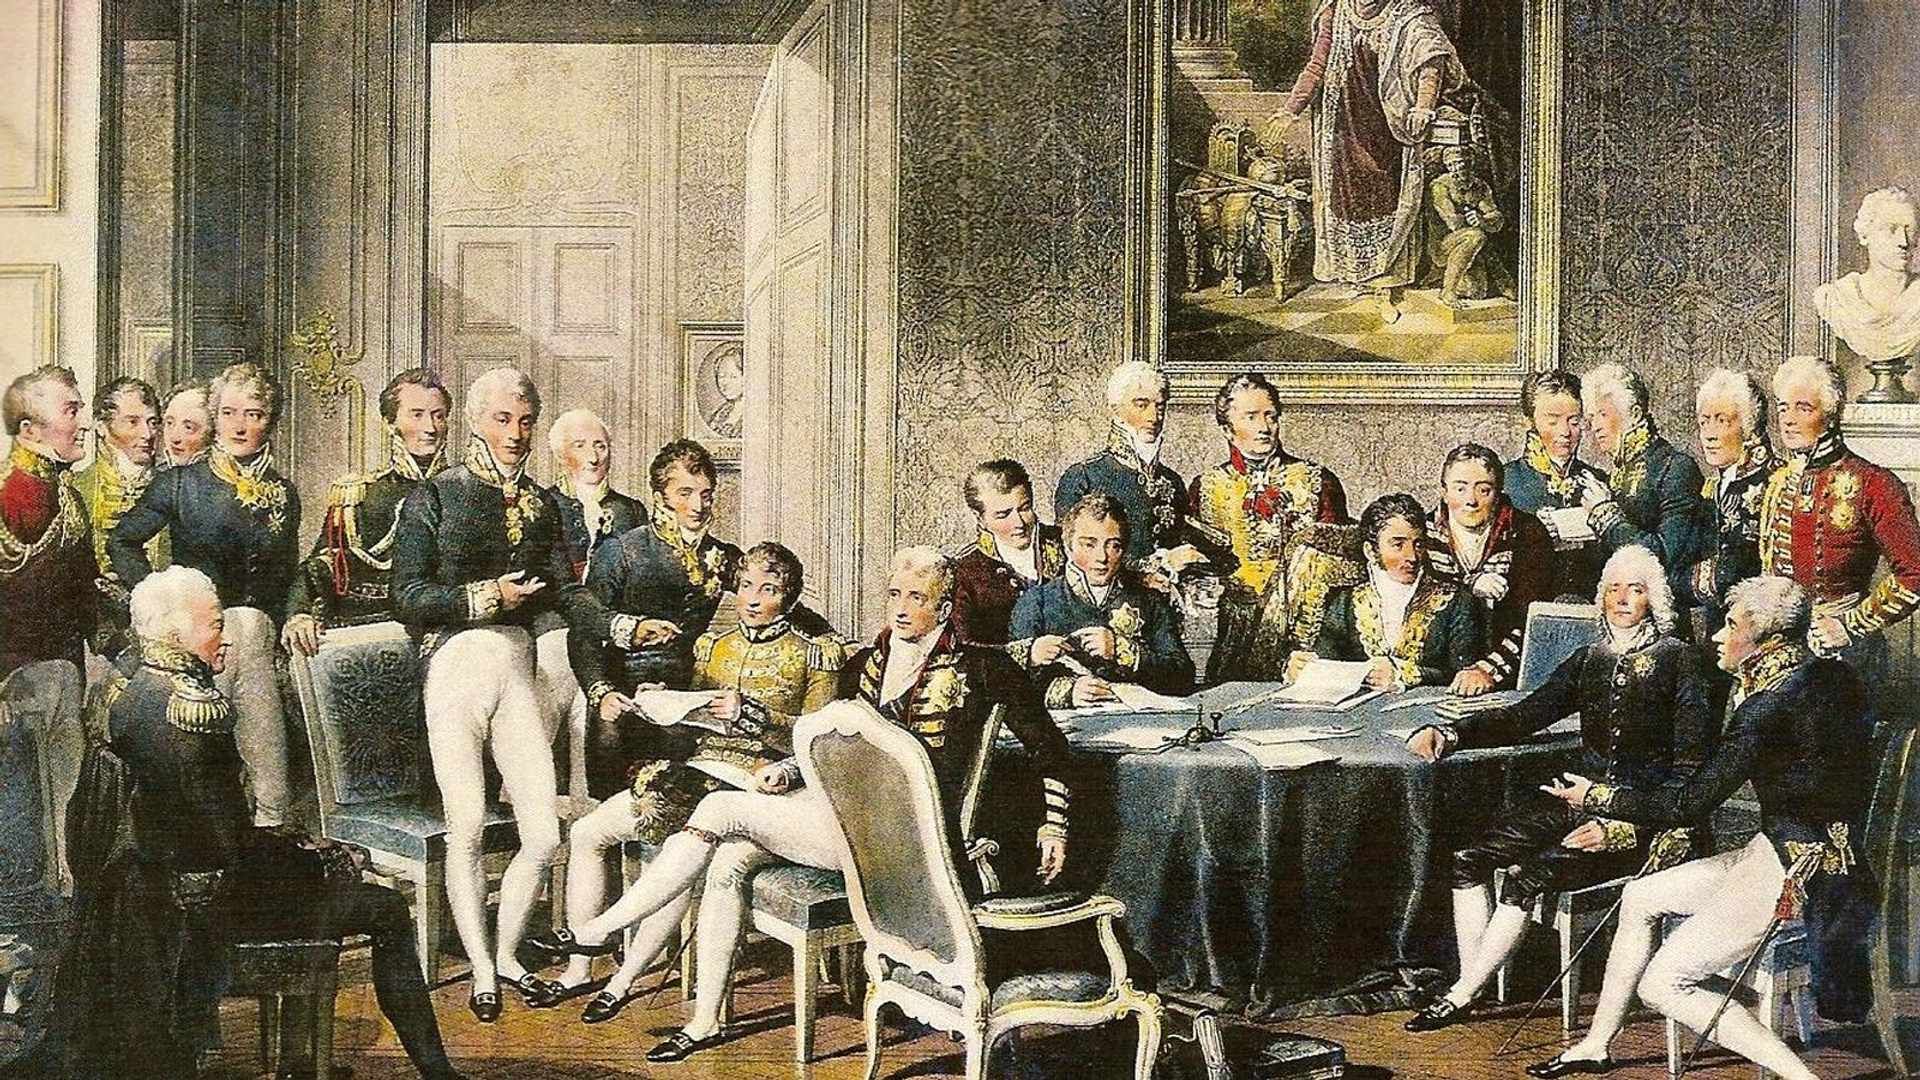 Delegados das potências europeias em discussões políticas no Congresso de Viena, numa gravura de Jean-Baptiste Isabey.